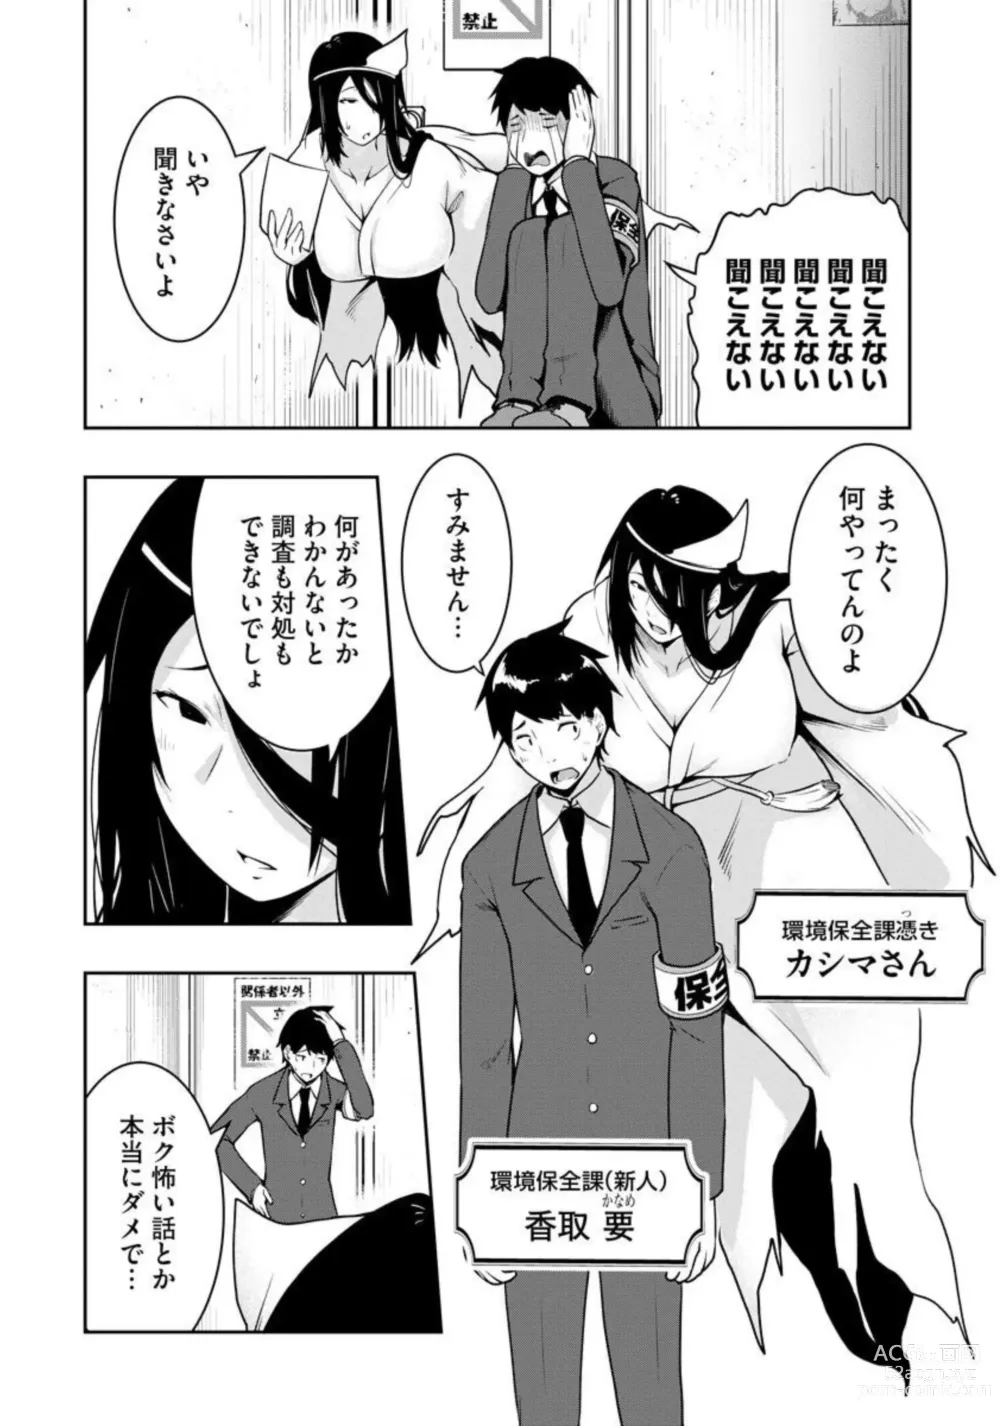 Page 7 of manga Kai 淫 Anata no Mono de Ikasetekudasai … Hontōha Yarashī Toshi Densetsu 1